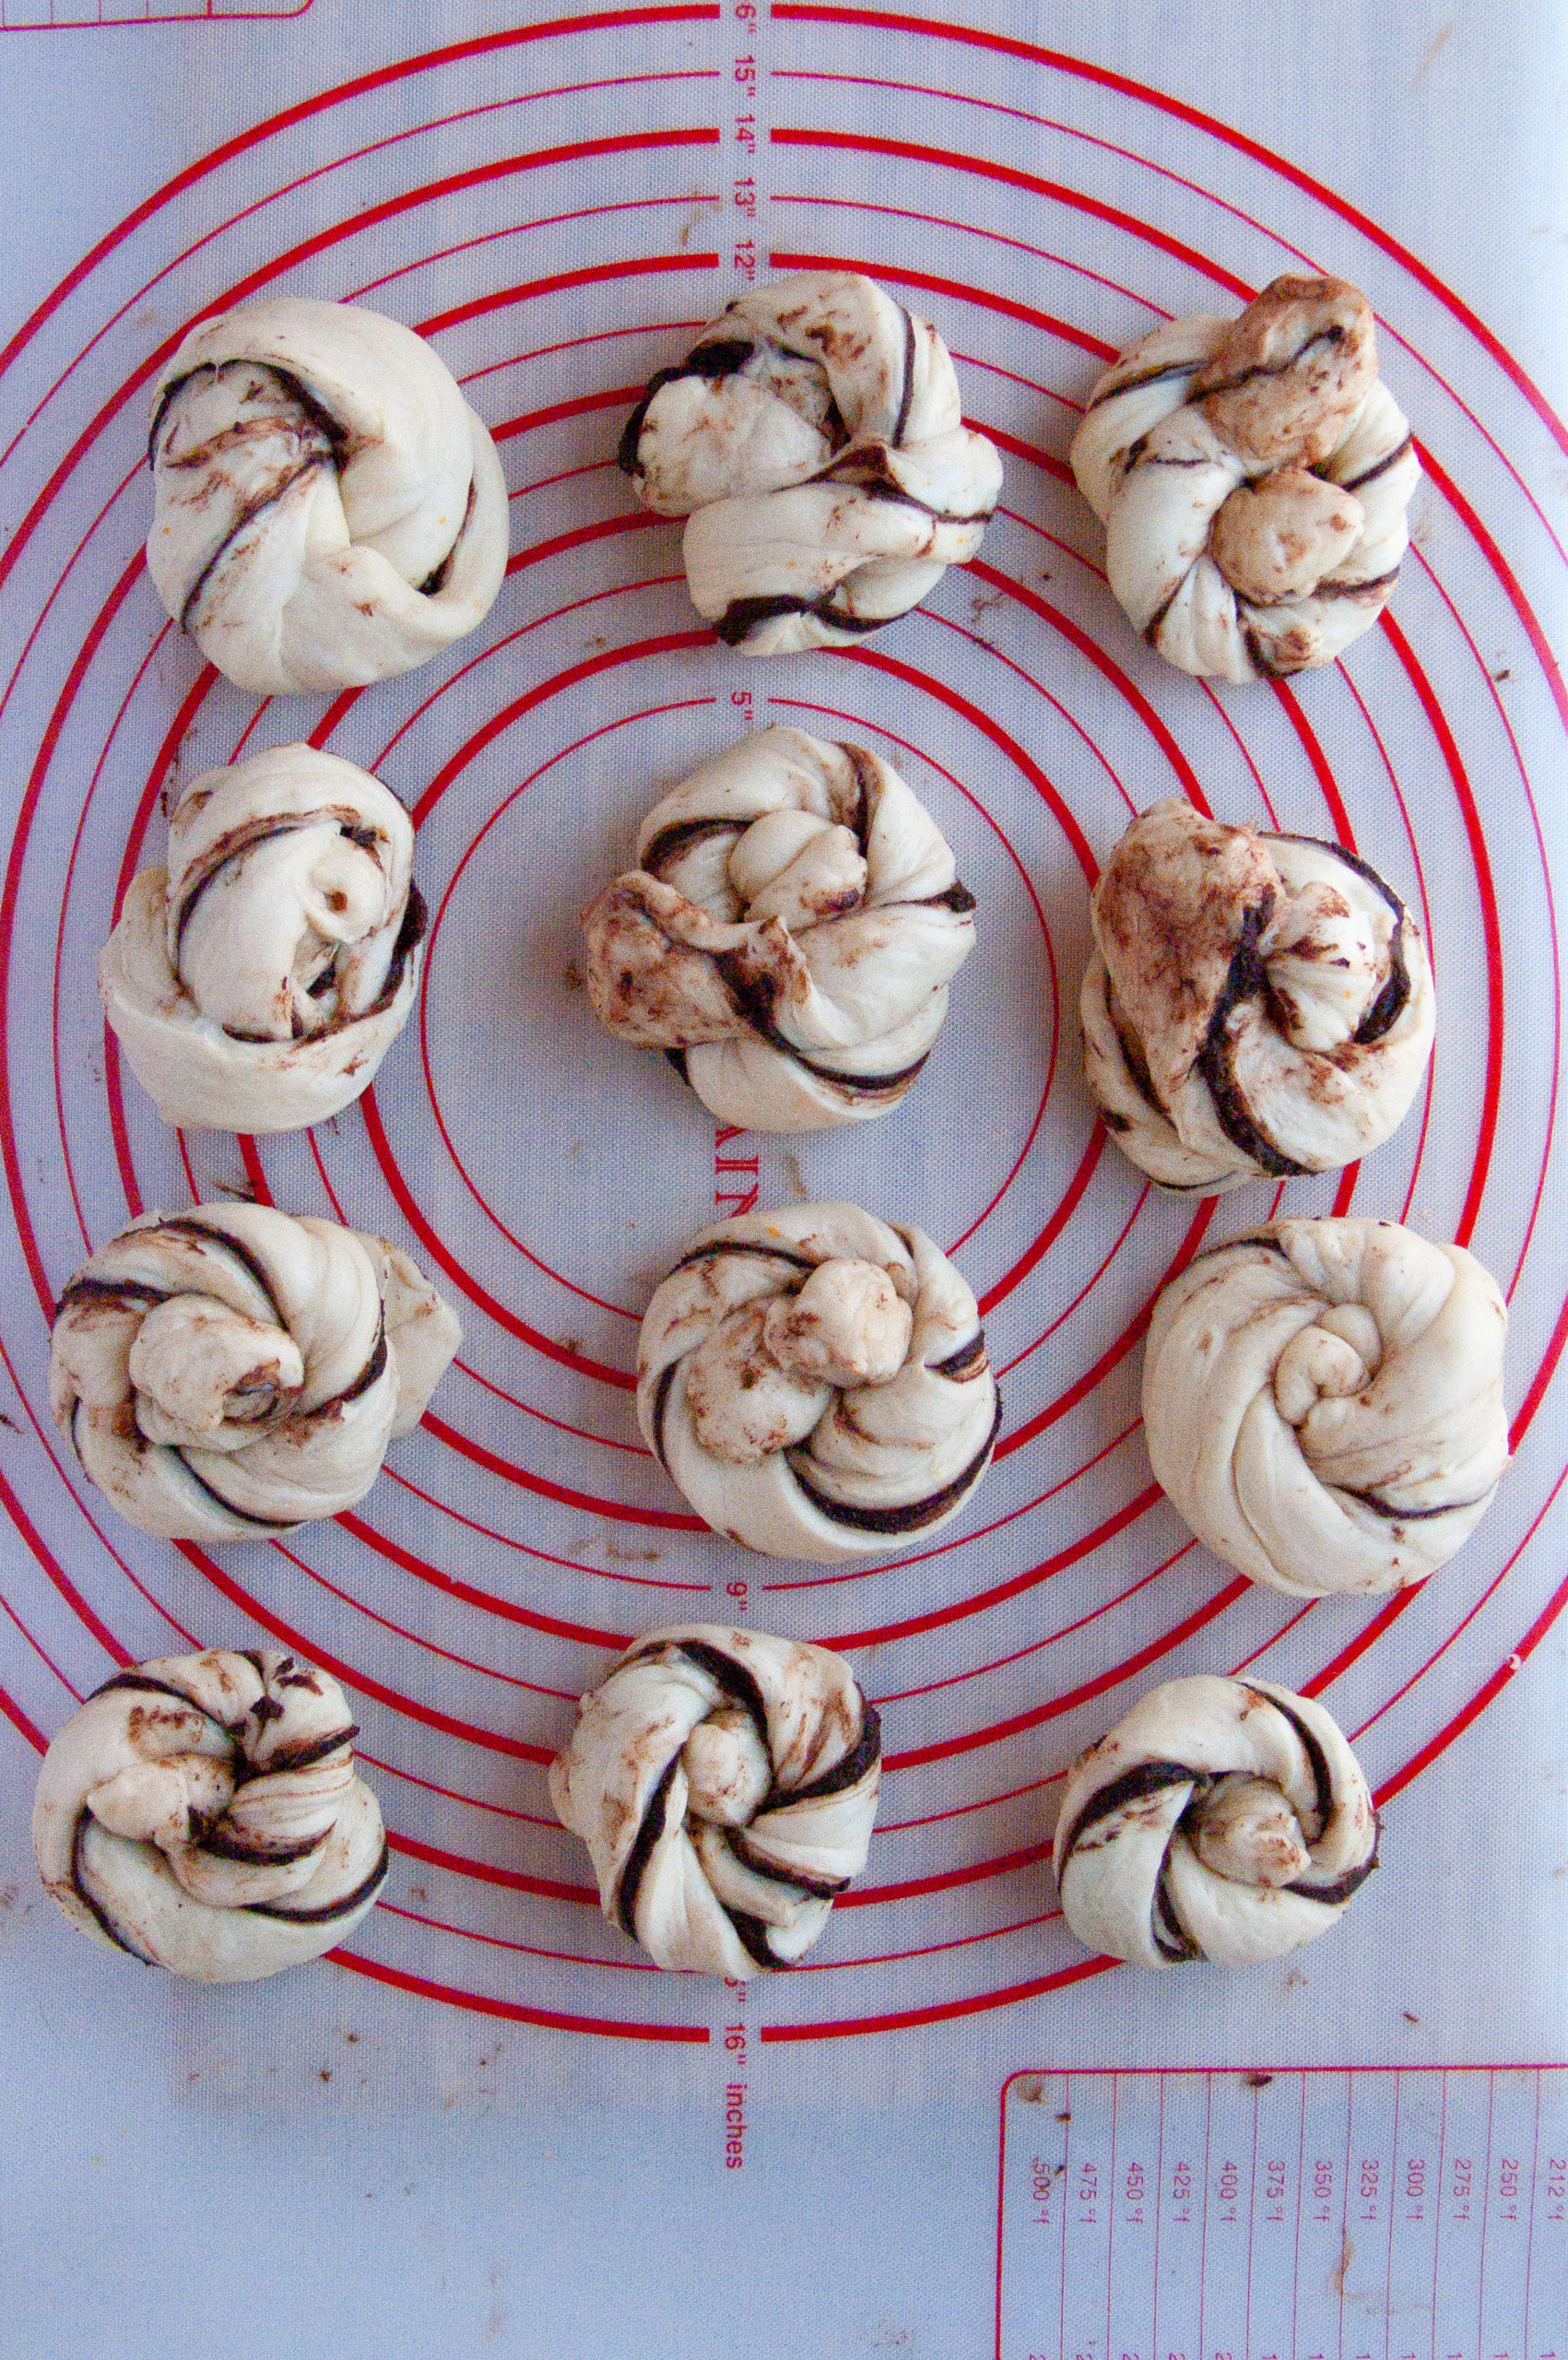 assembled chocolate buns on a baking mat